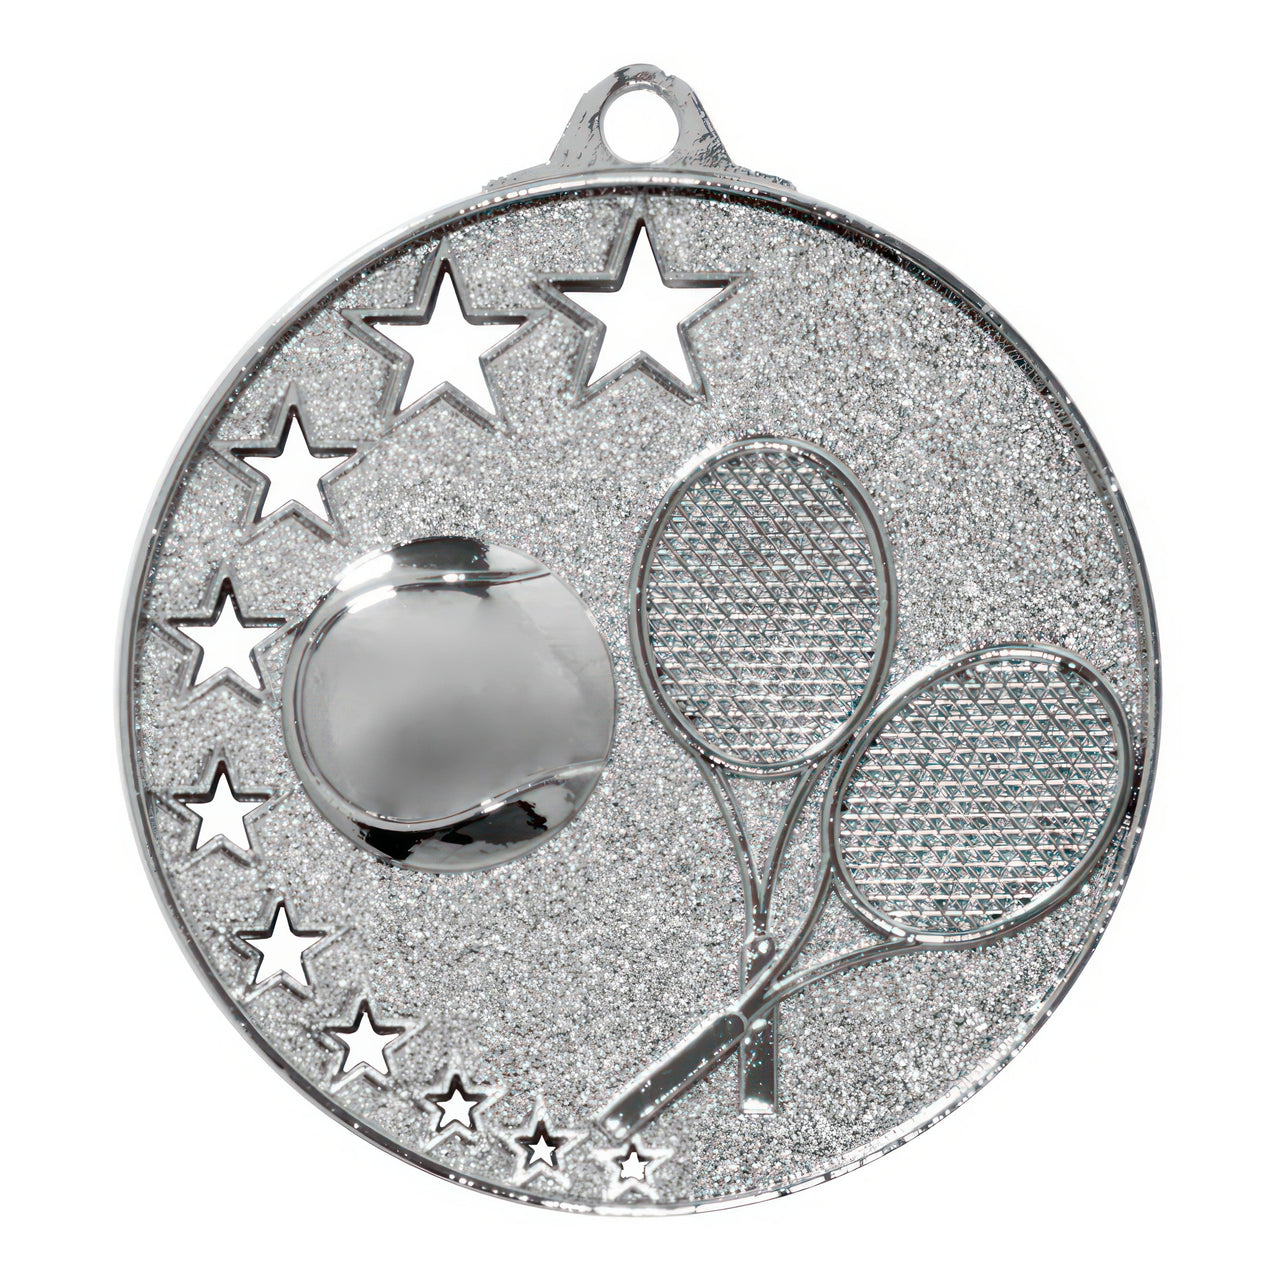 Die Tennis Medaillen Magdeburg 52 mm PK79237 sind eine silberne Tennismedaille mit einem Tennisball, zwei gekreuzten Tennisschlägern und mehreren Sternen auf einem glitzernden Hintergrund, gefertigt aus hochwertigem Material für ein exklusives Design.